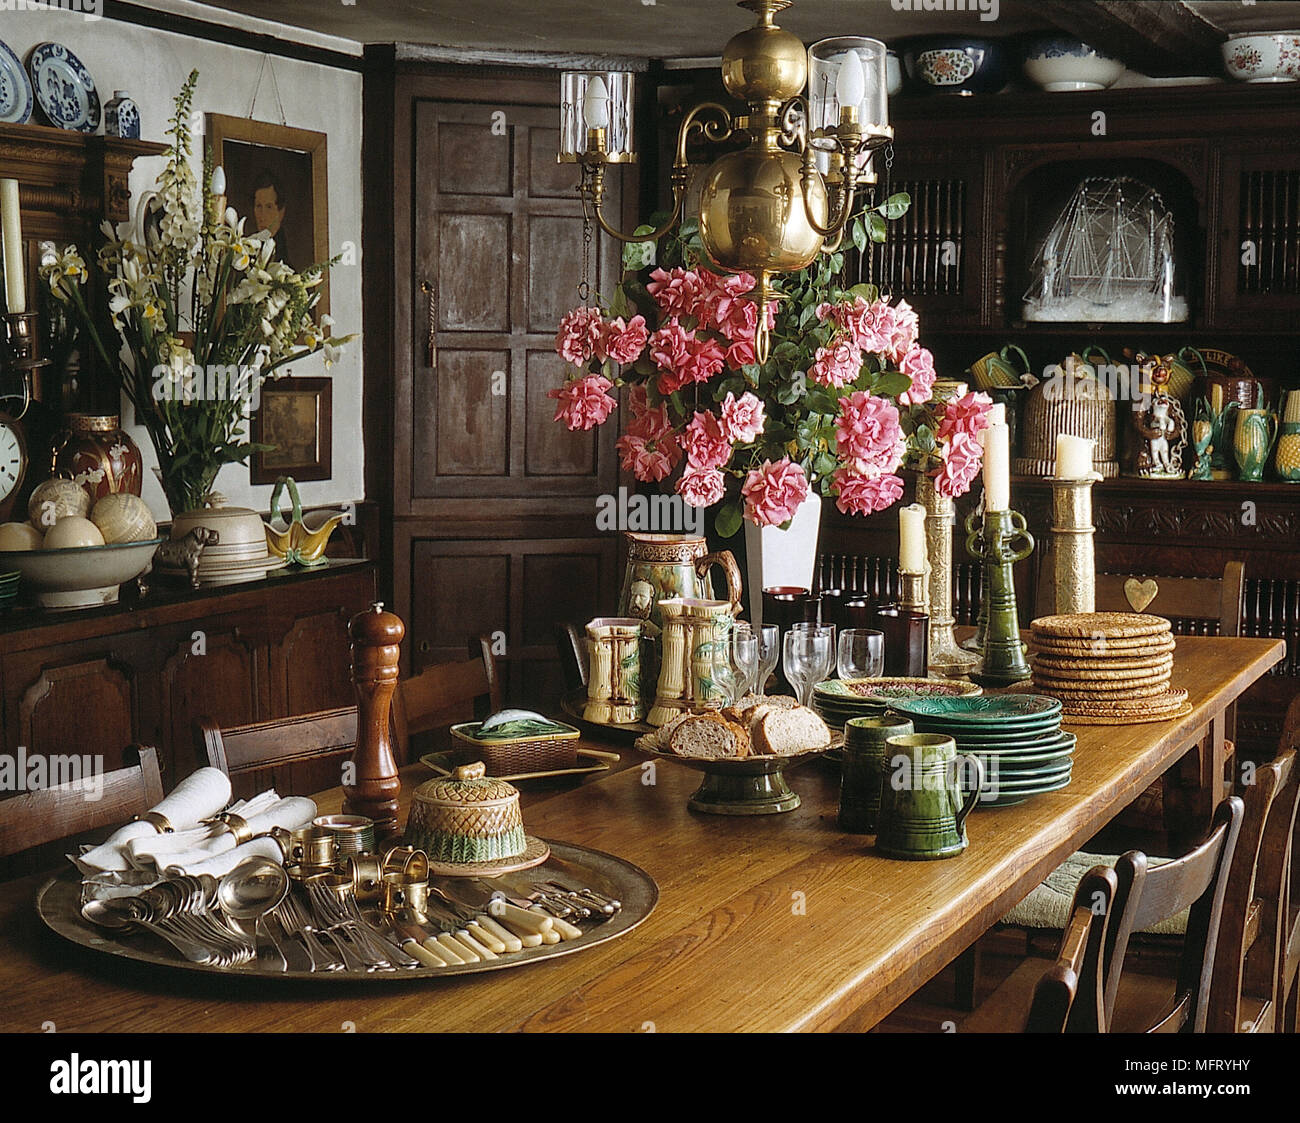 Salle à manger table de salle à manger frêne campagne victorienne chaises roses dans un vase vaisselle et couverts argenterie silver tray murs lambrissés en bois résineux Banque D'Images